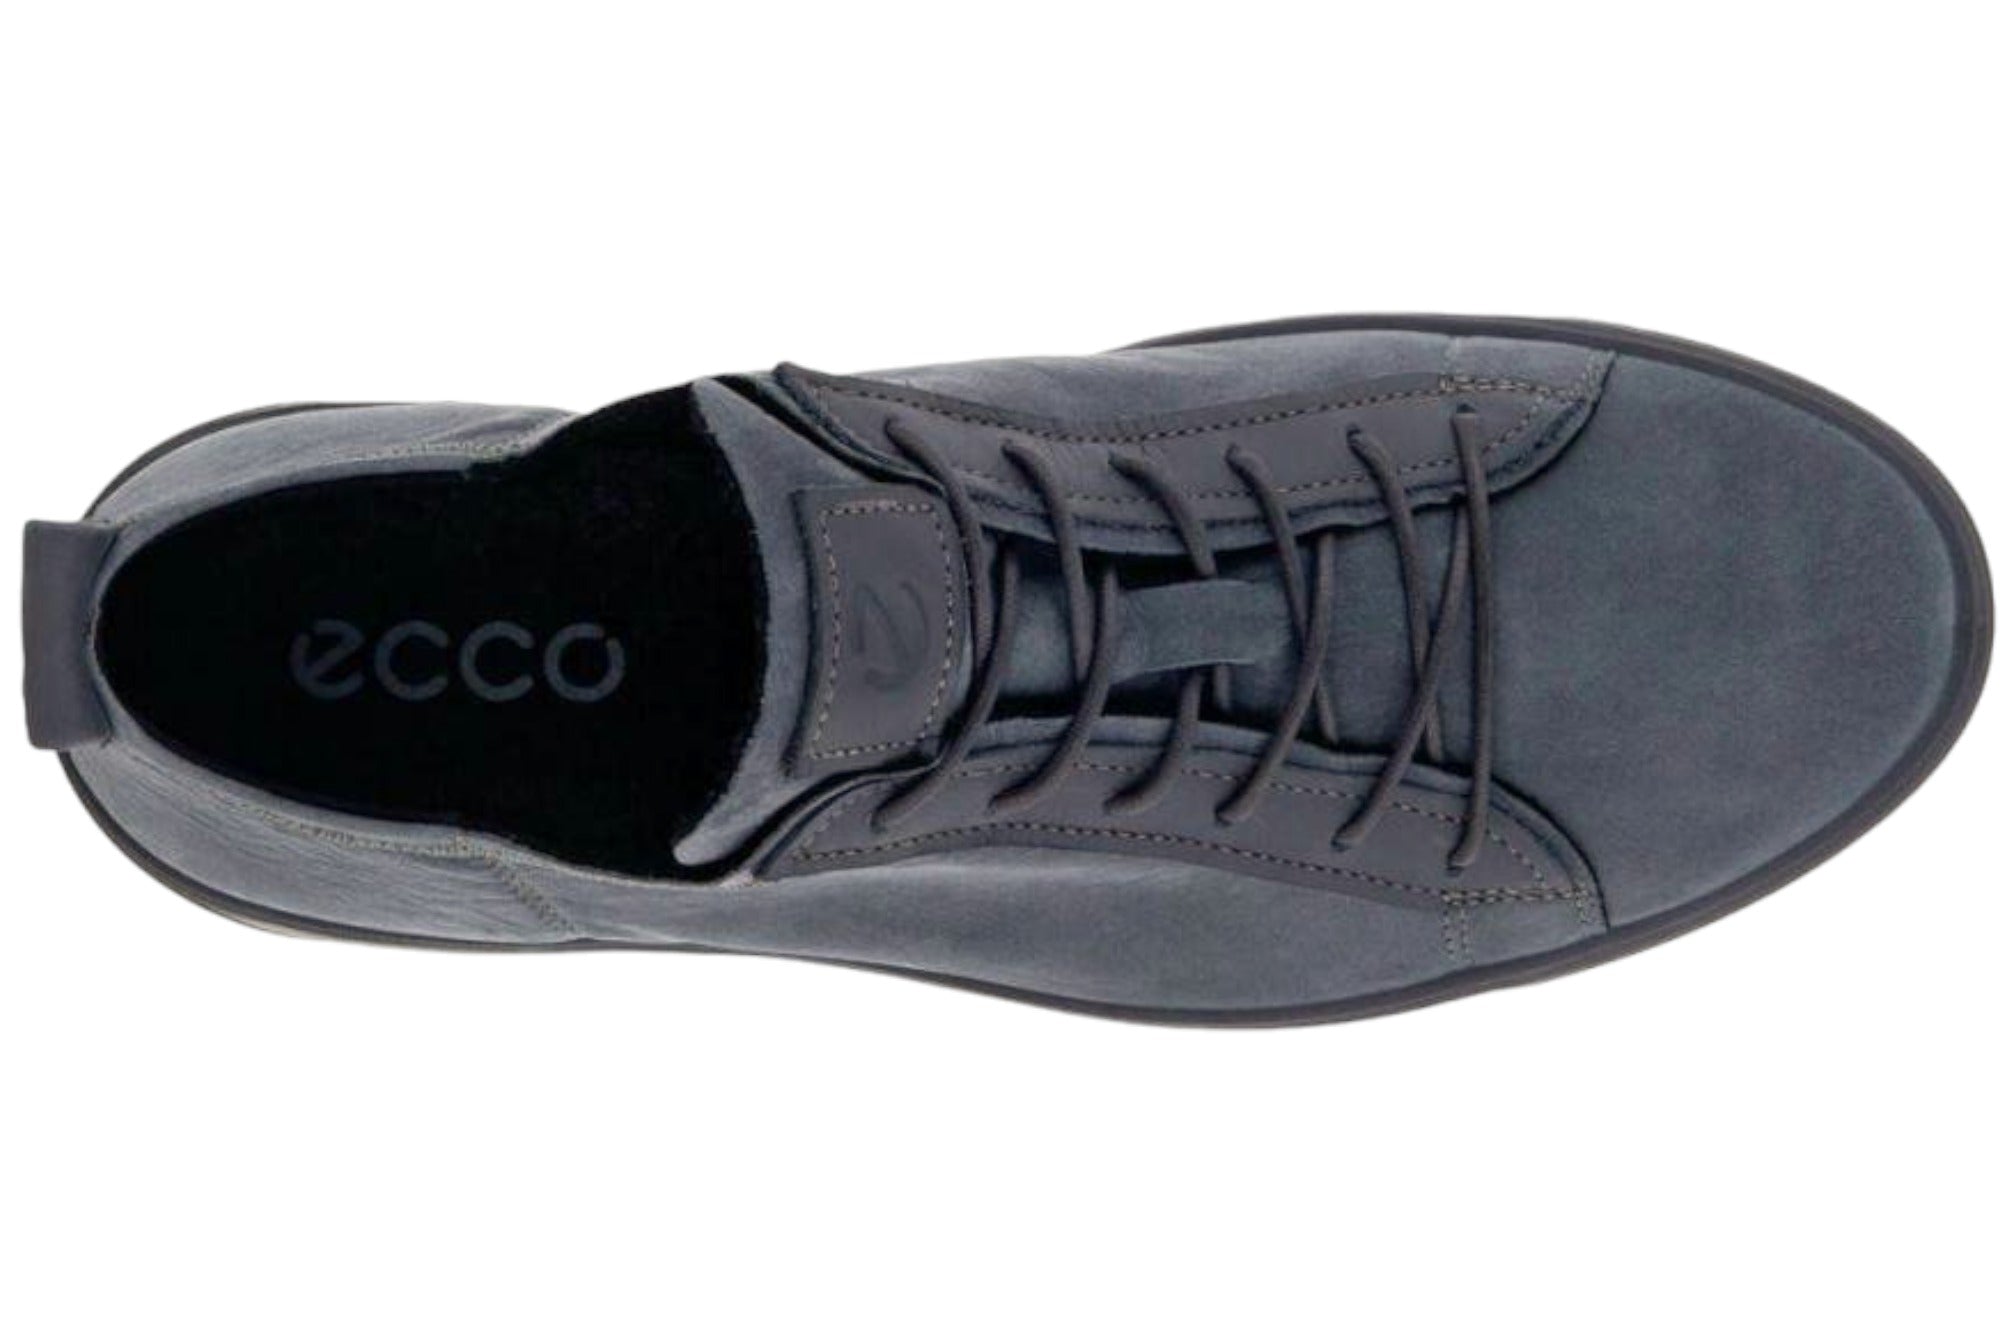 Ecco Street Tray Sneaker - Men's